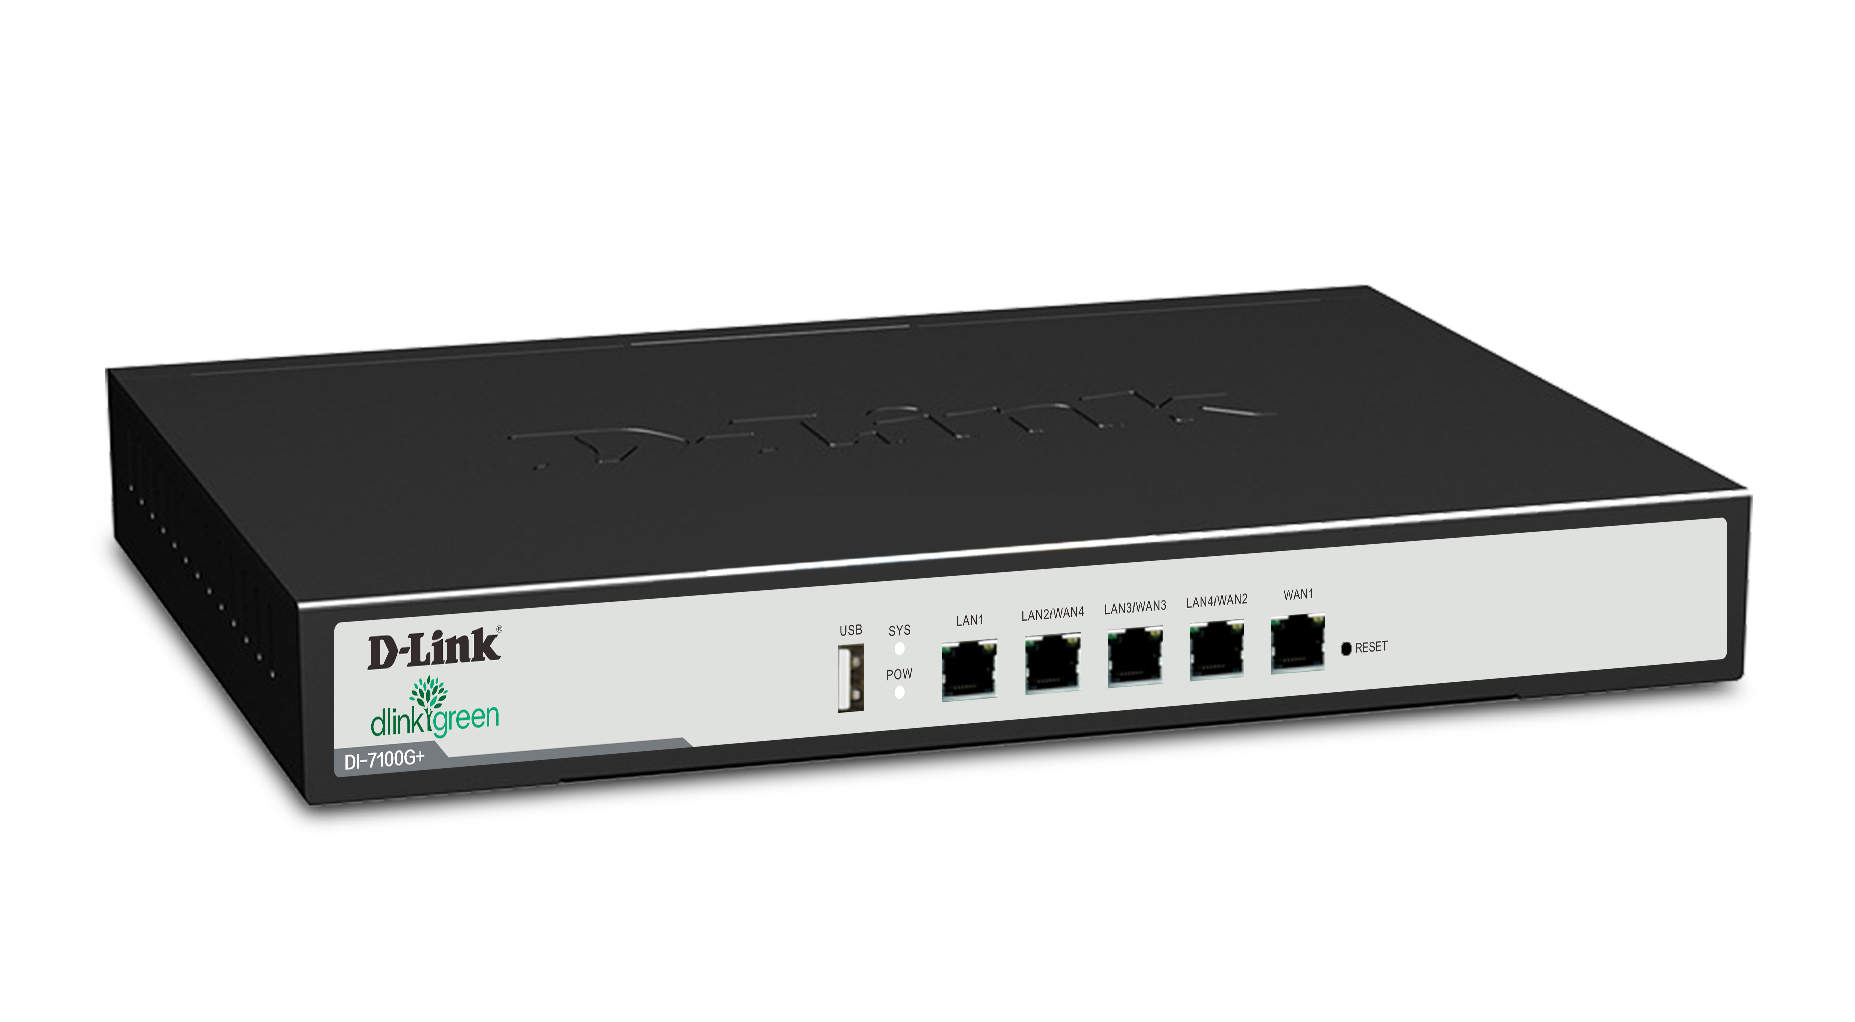 D-LINK 7300G+ 智慧型企业上网行为管理路由网关